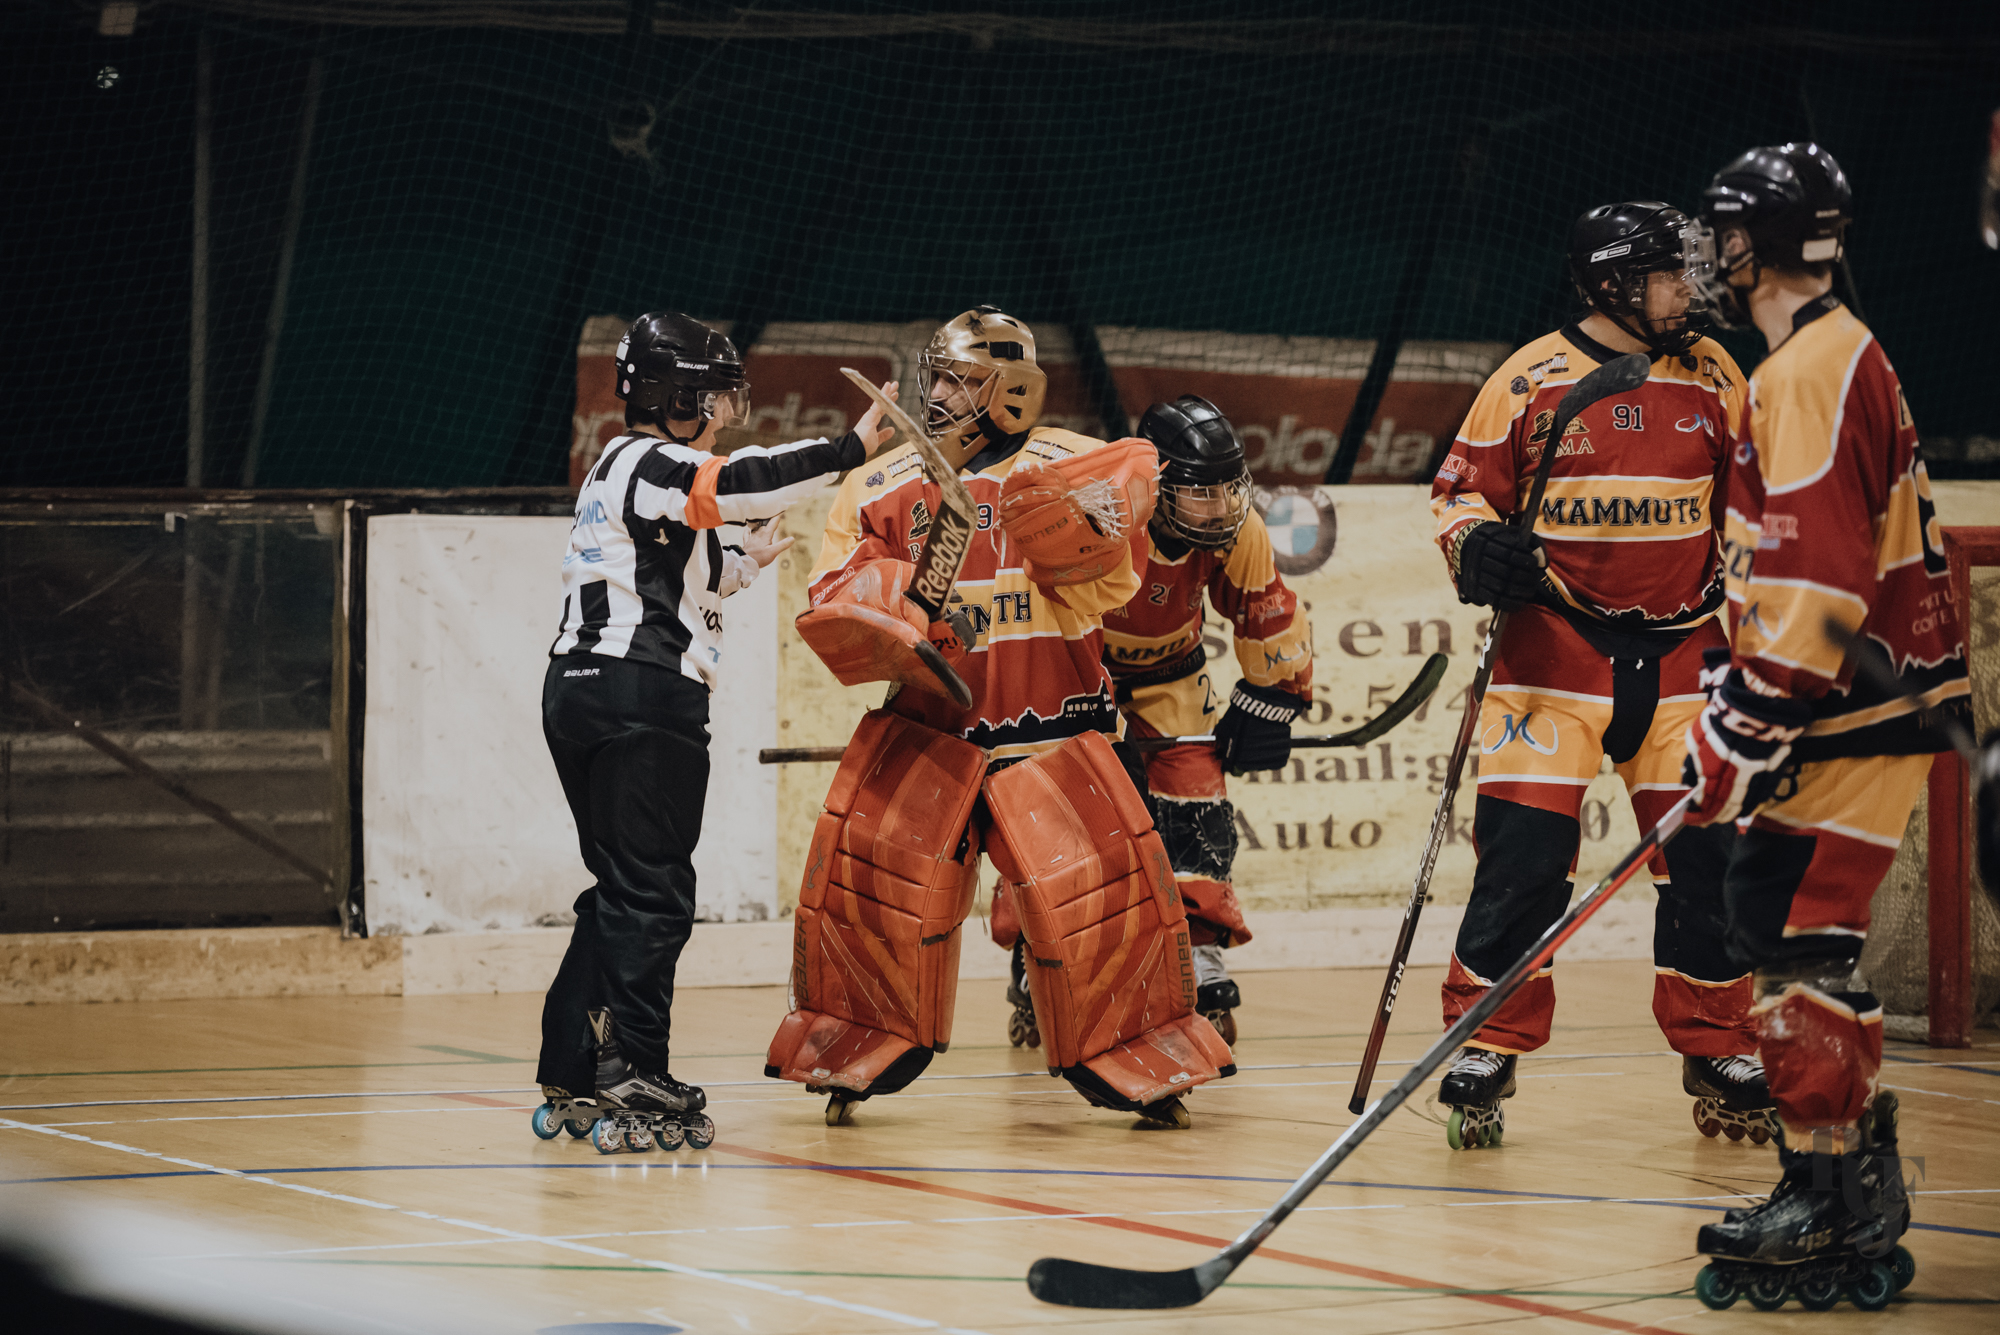 Hockey Mammuth, hockey e pattinaggio a roma, hockey giovanile, Mammuth Roma, Mammuth hockey roma, Fox Legnaro, sports photo, FISR, inline hockey, Rita Foldi photo